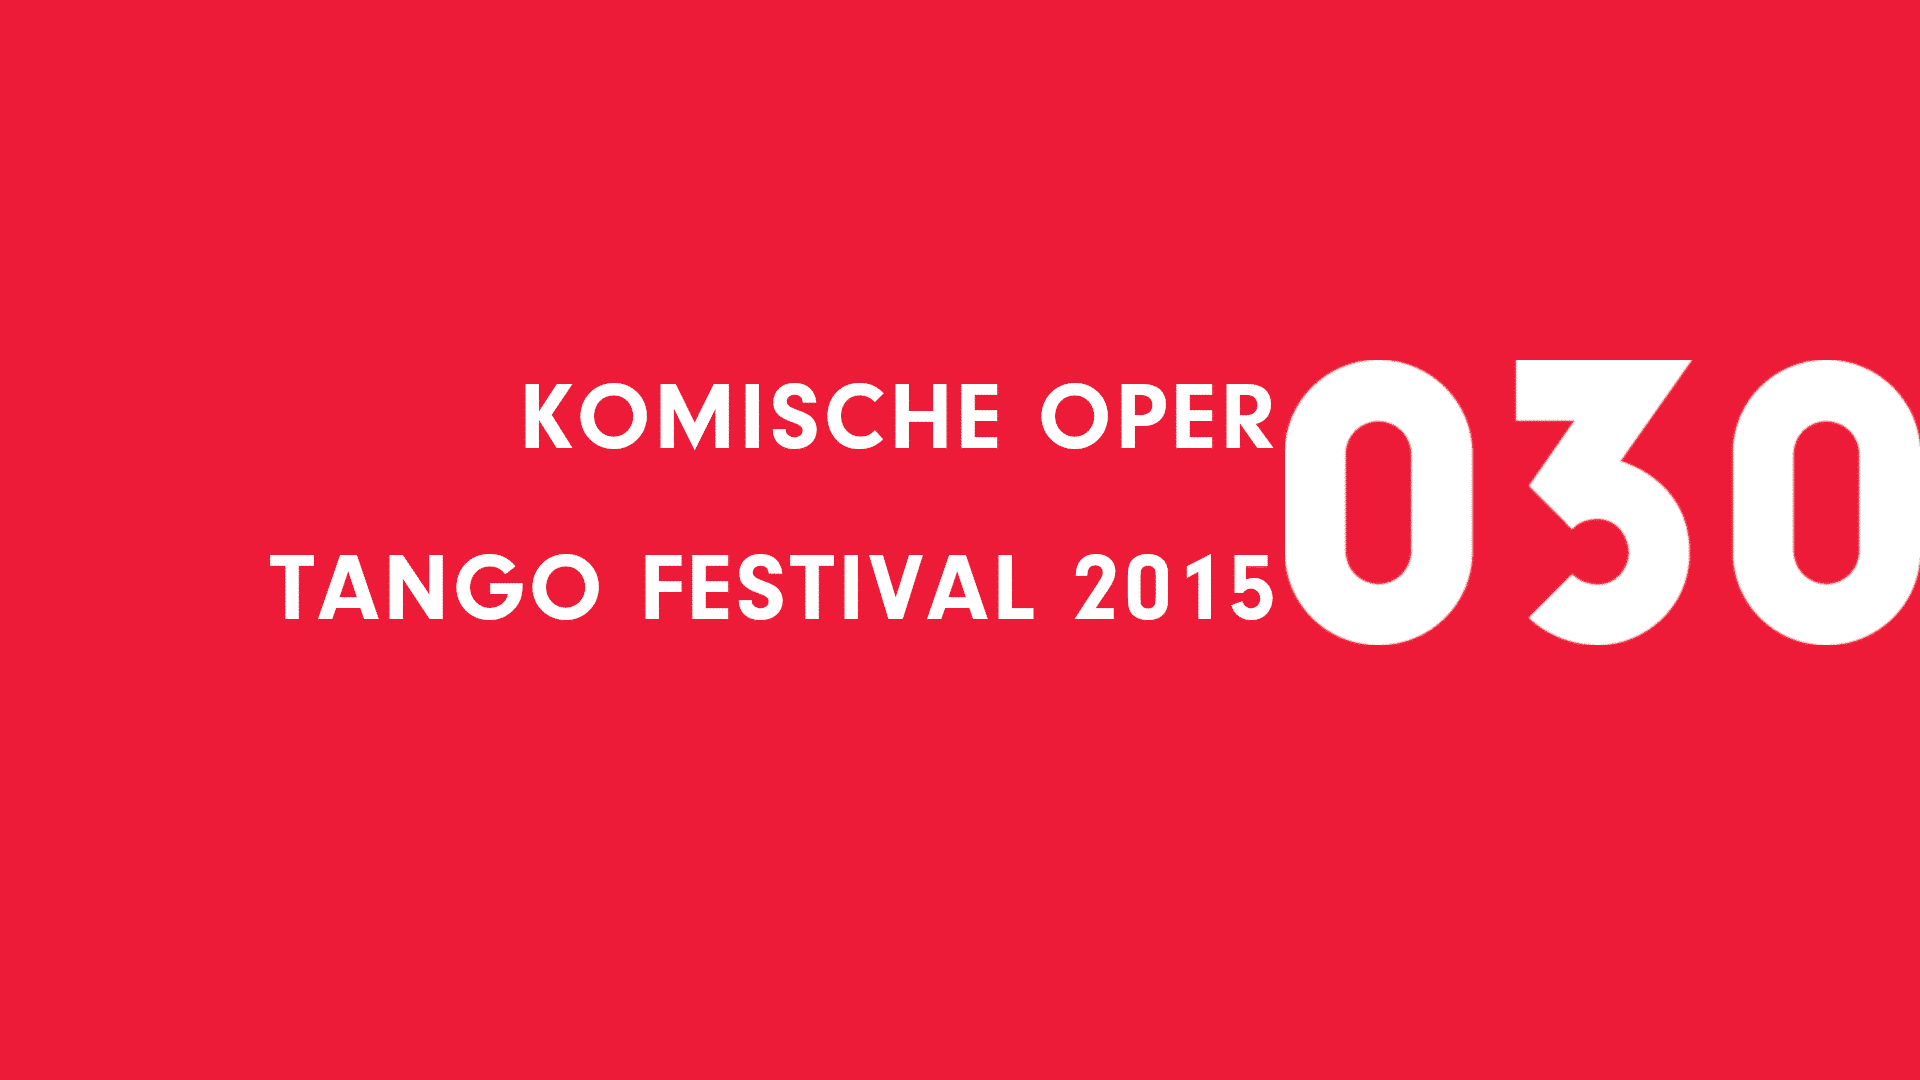 Komische Oper Tango Festival 2015 preview picture